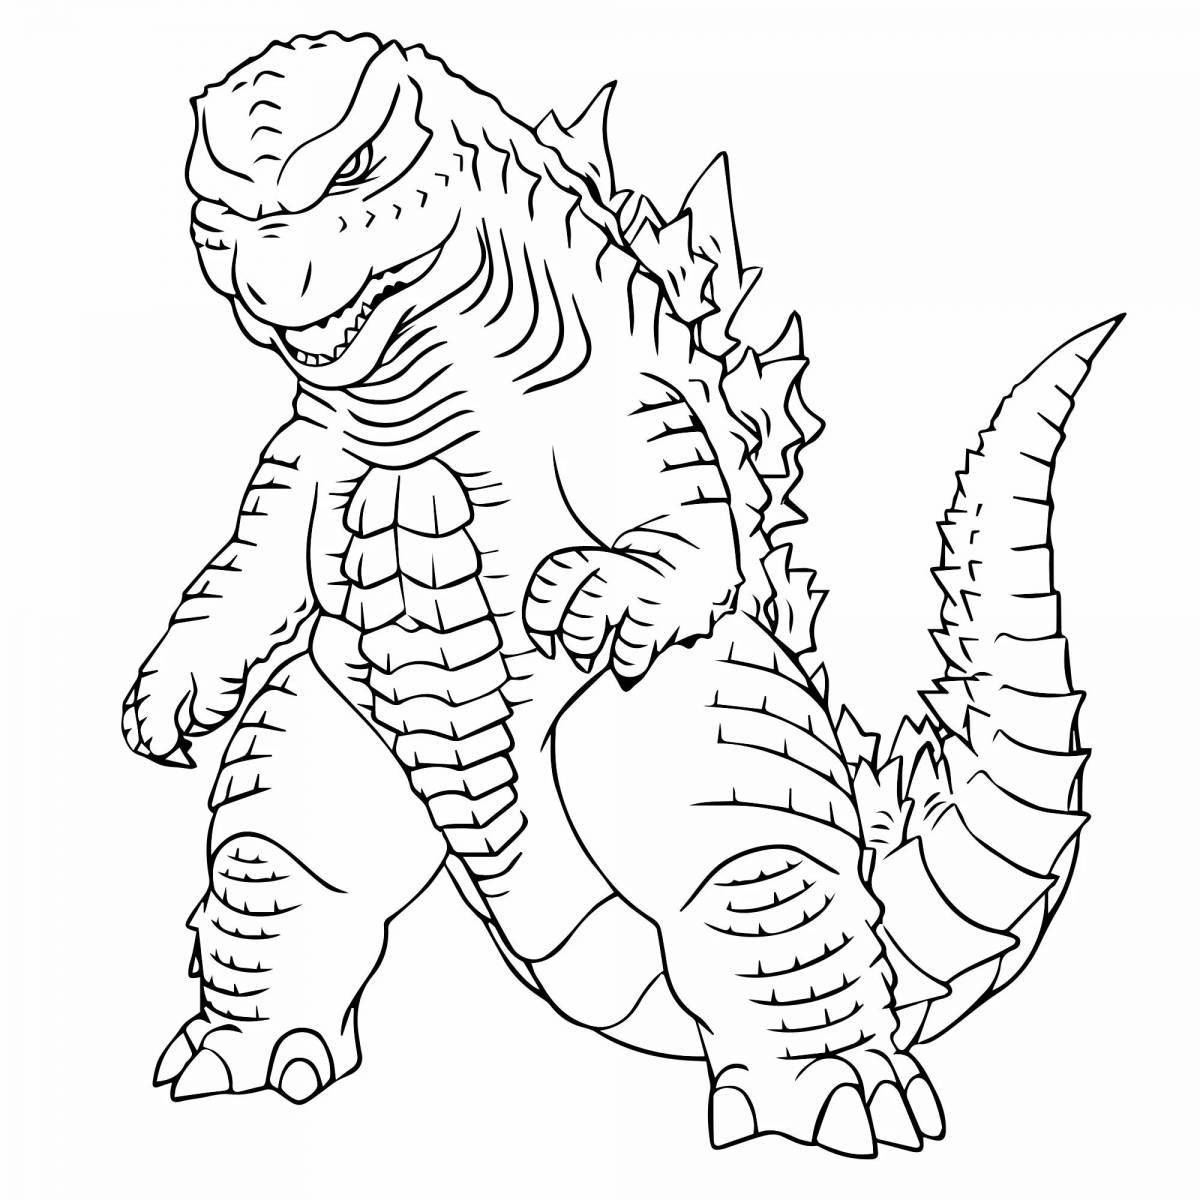 Godzilla adorable robot coloring page